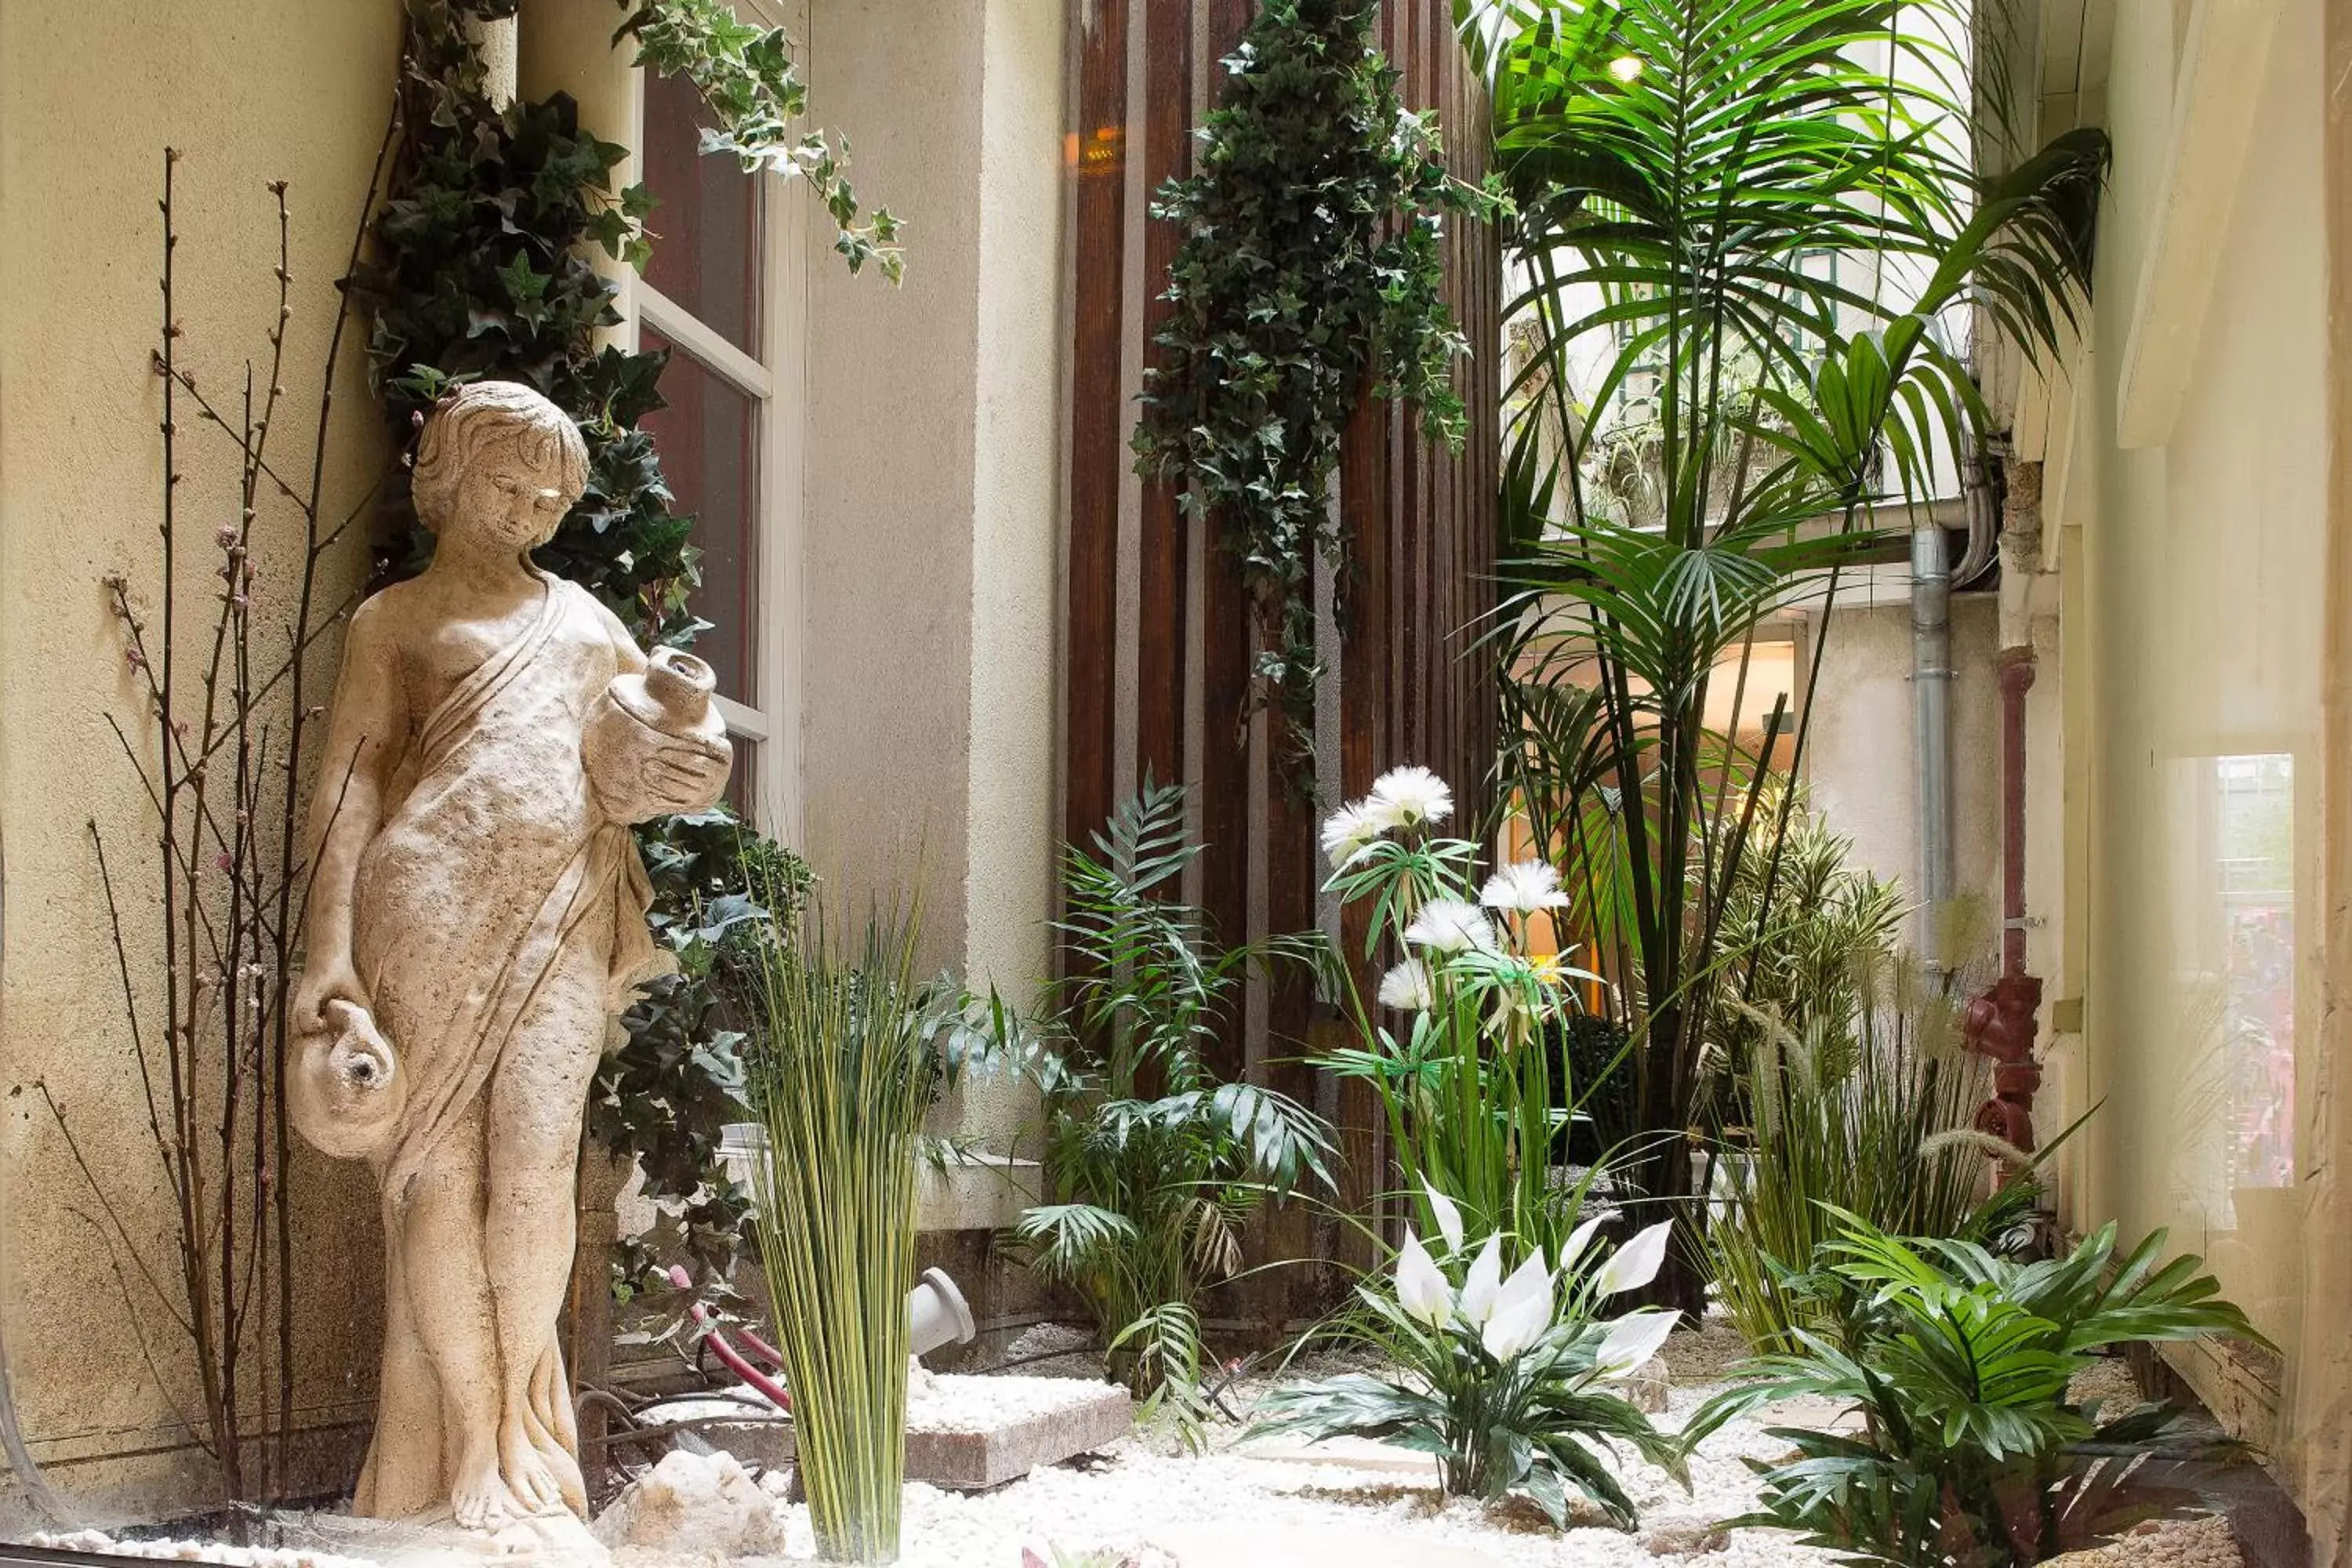 Garden view in Hotel Louvre Bons Enfants